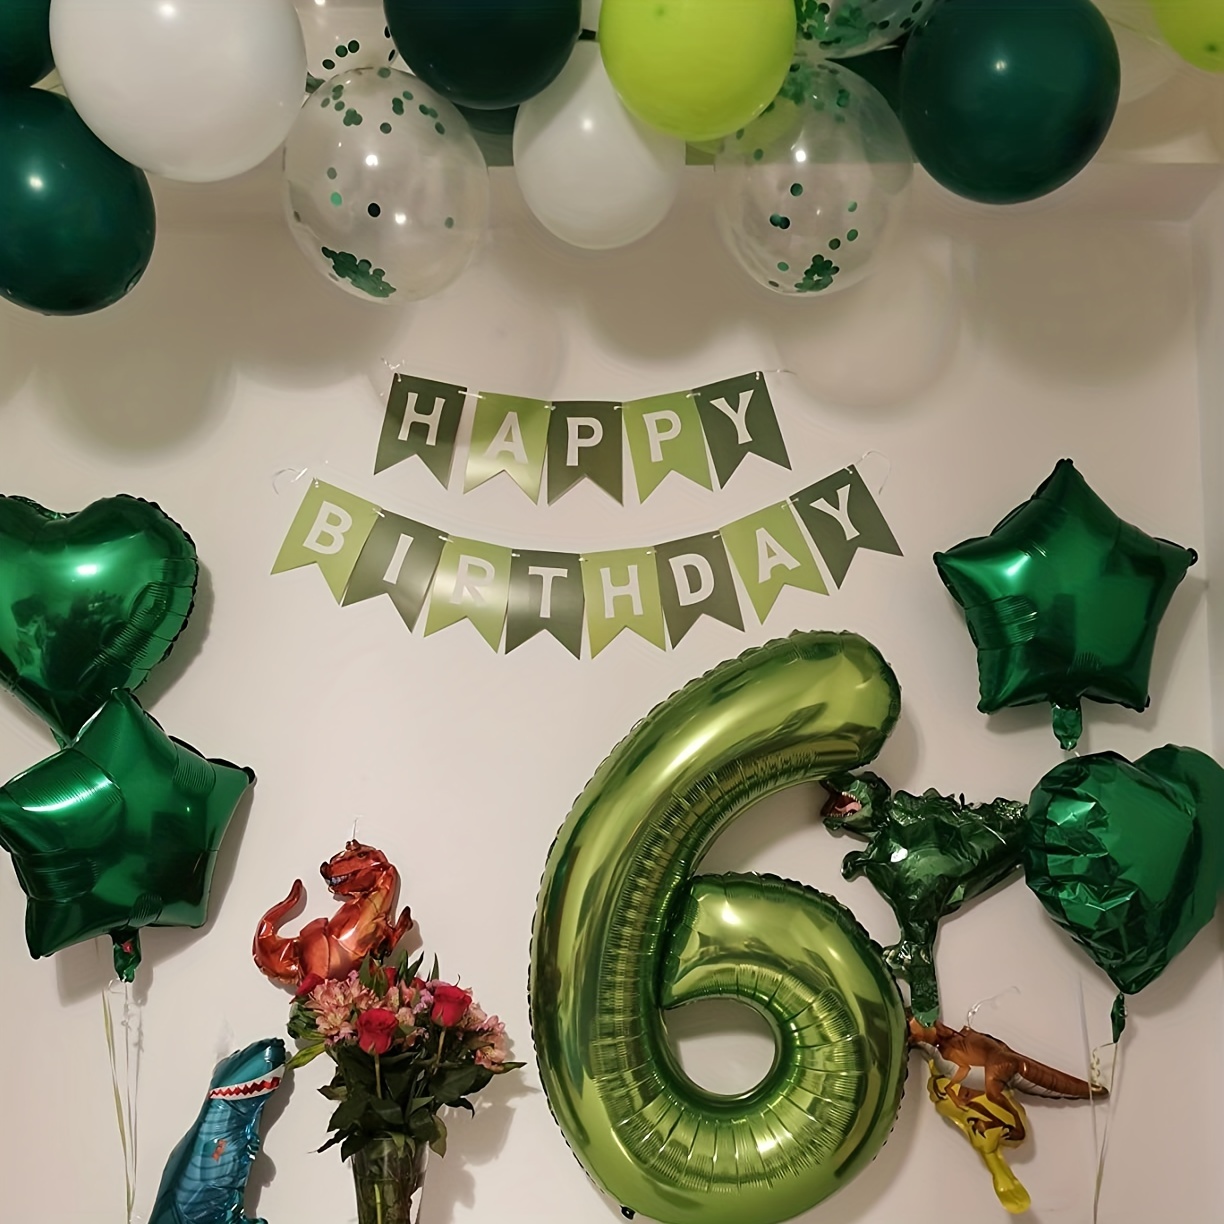  Globos de decoración de fiesta de cumpleaños de dinosaurio,  suministros de decoración de fiesta de cumpleaños de dinosaurios,  decoraciones de fiesta de dinosaurios para niños, incluye globos de  dinosaurios, pancarta de